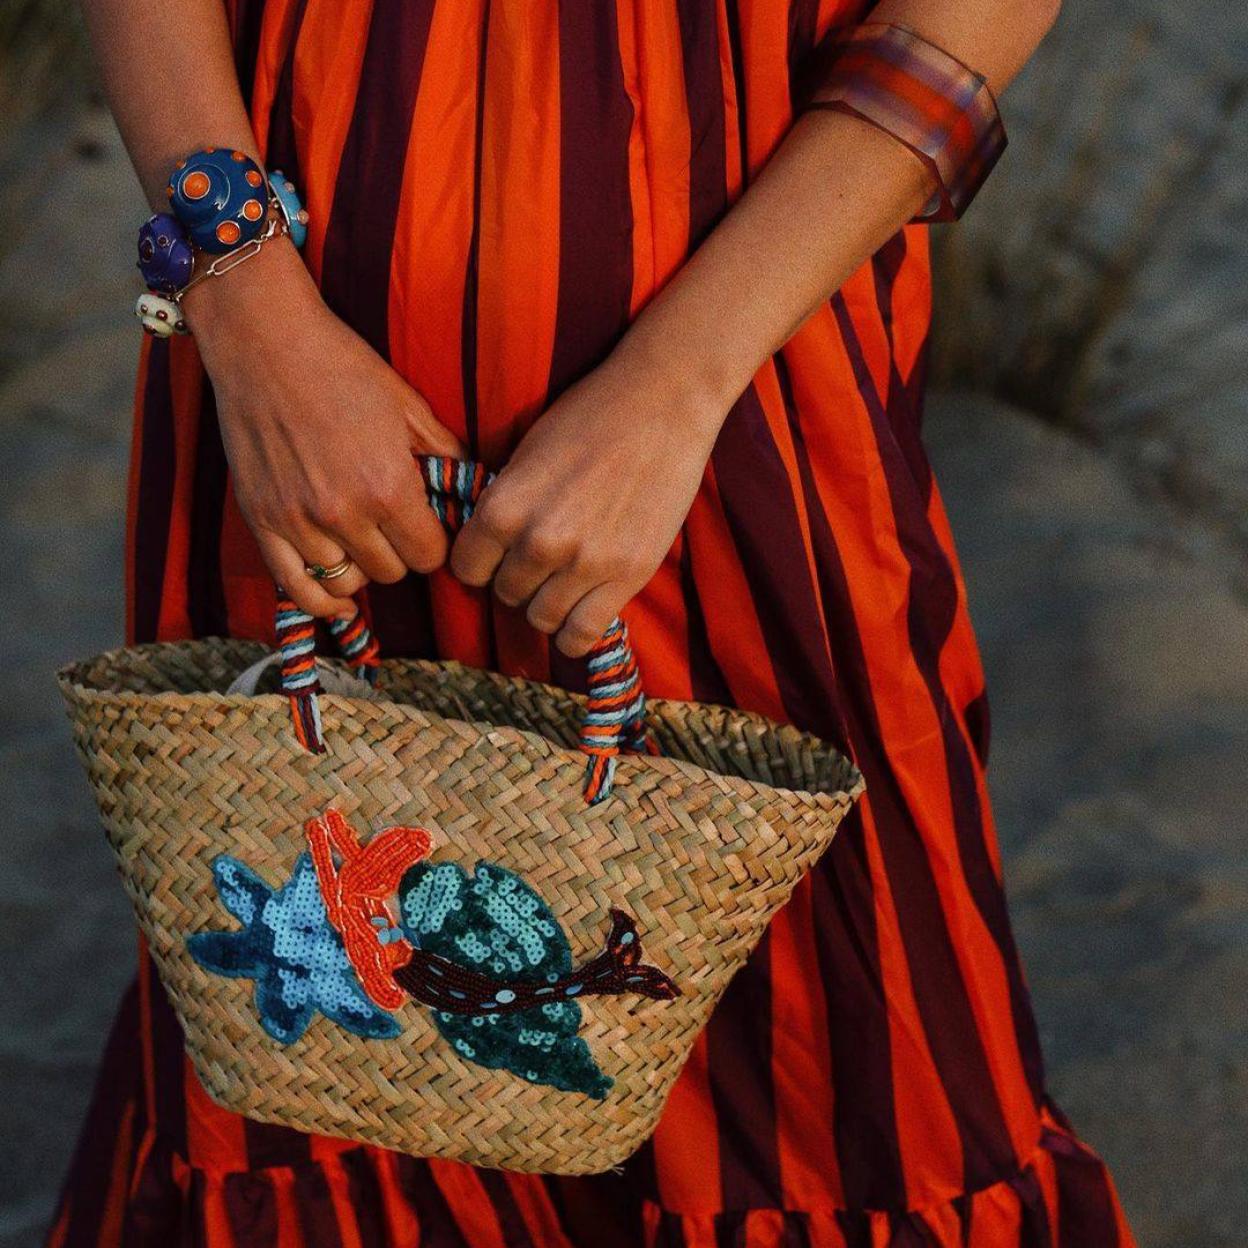 Los capazos o bolsos de rafia del low cost más bonitos para verano | Mujer Hoy